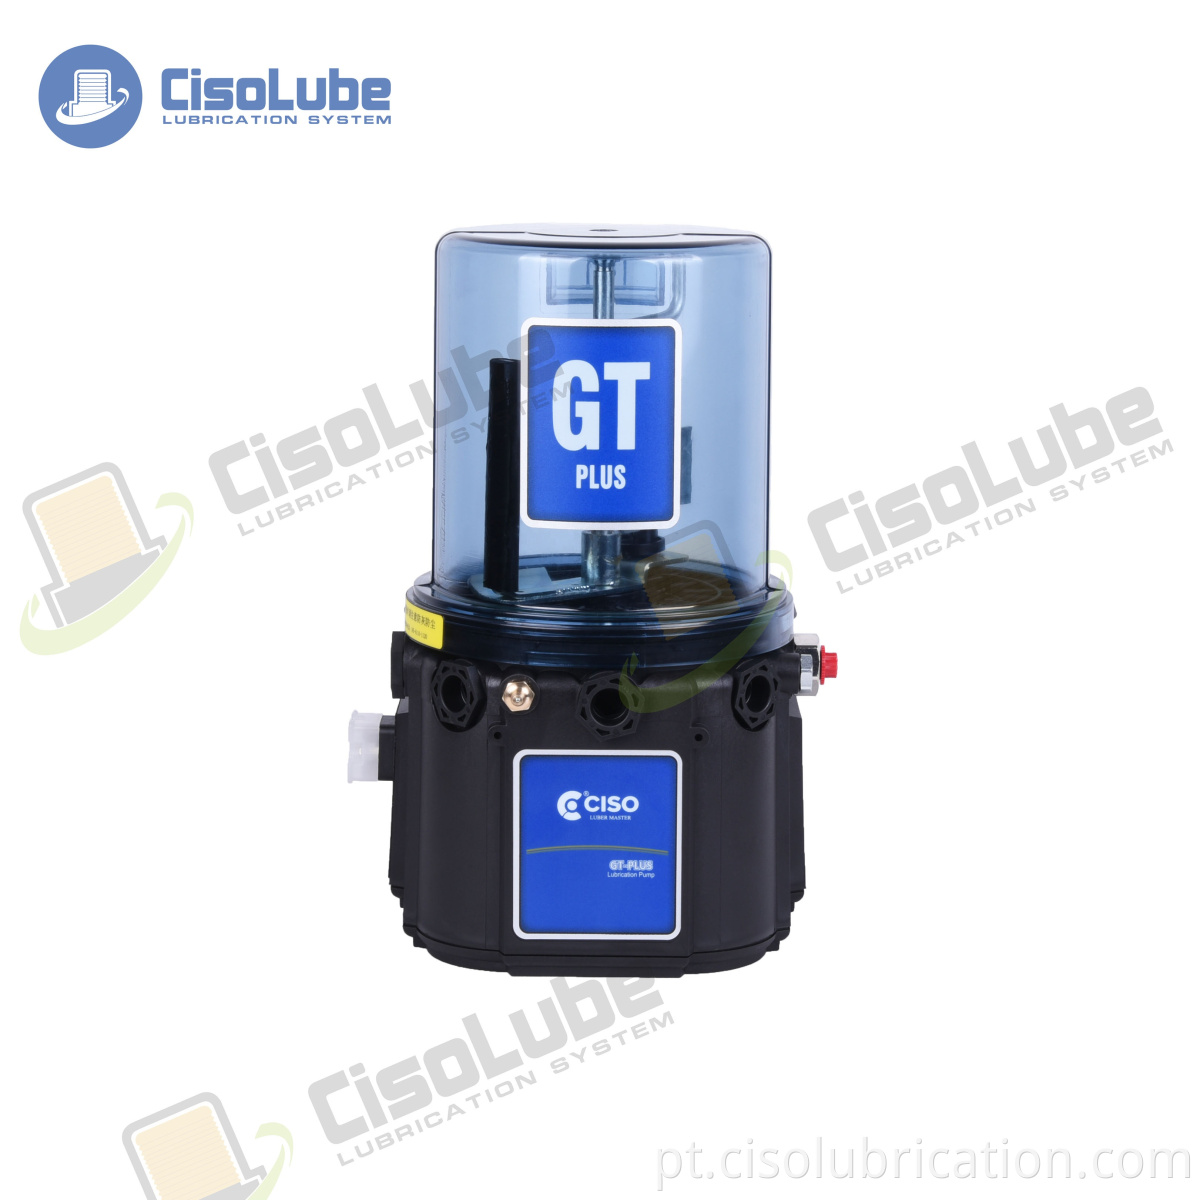 CISO Factory Good Price 24 V / 220 V / 380 V bomba de lubrificação automática da máquina cnc para máquinas